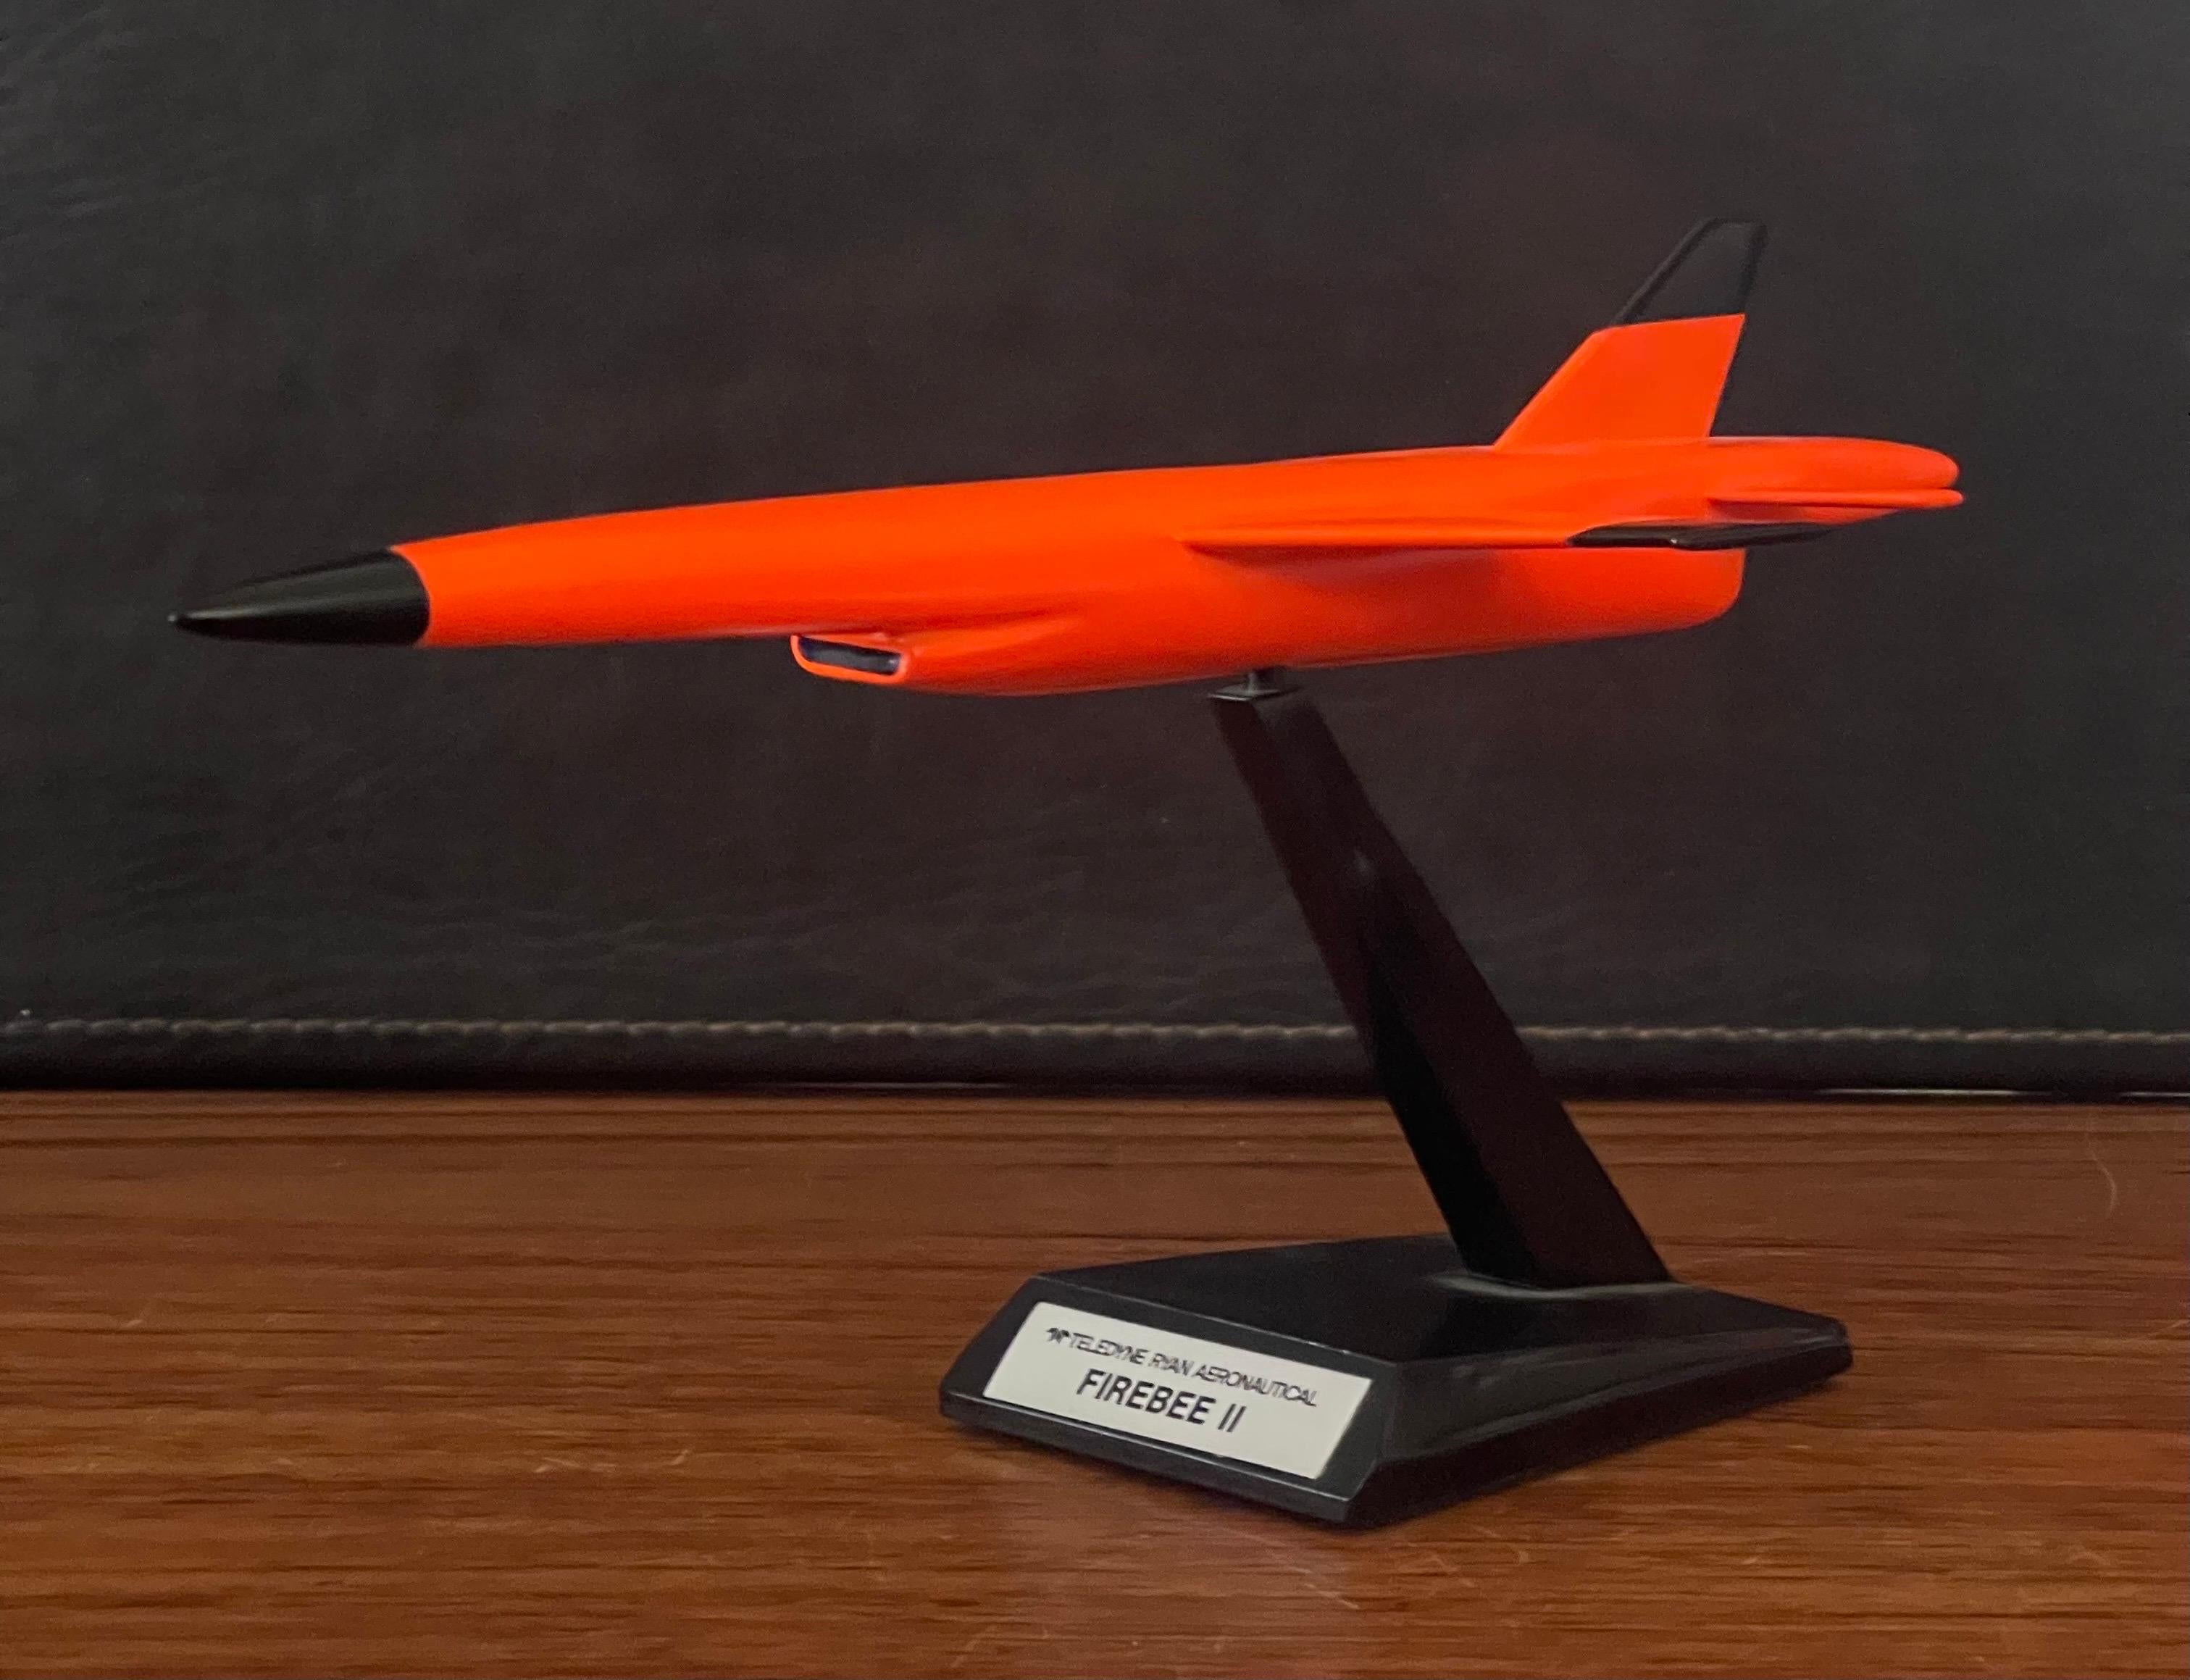 Stainless Steel Teledyne Ryan Firebee II Drone Contractor's Desk Model For Sale